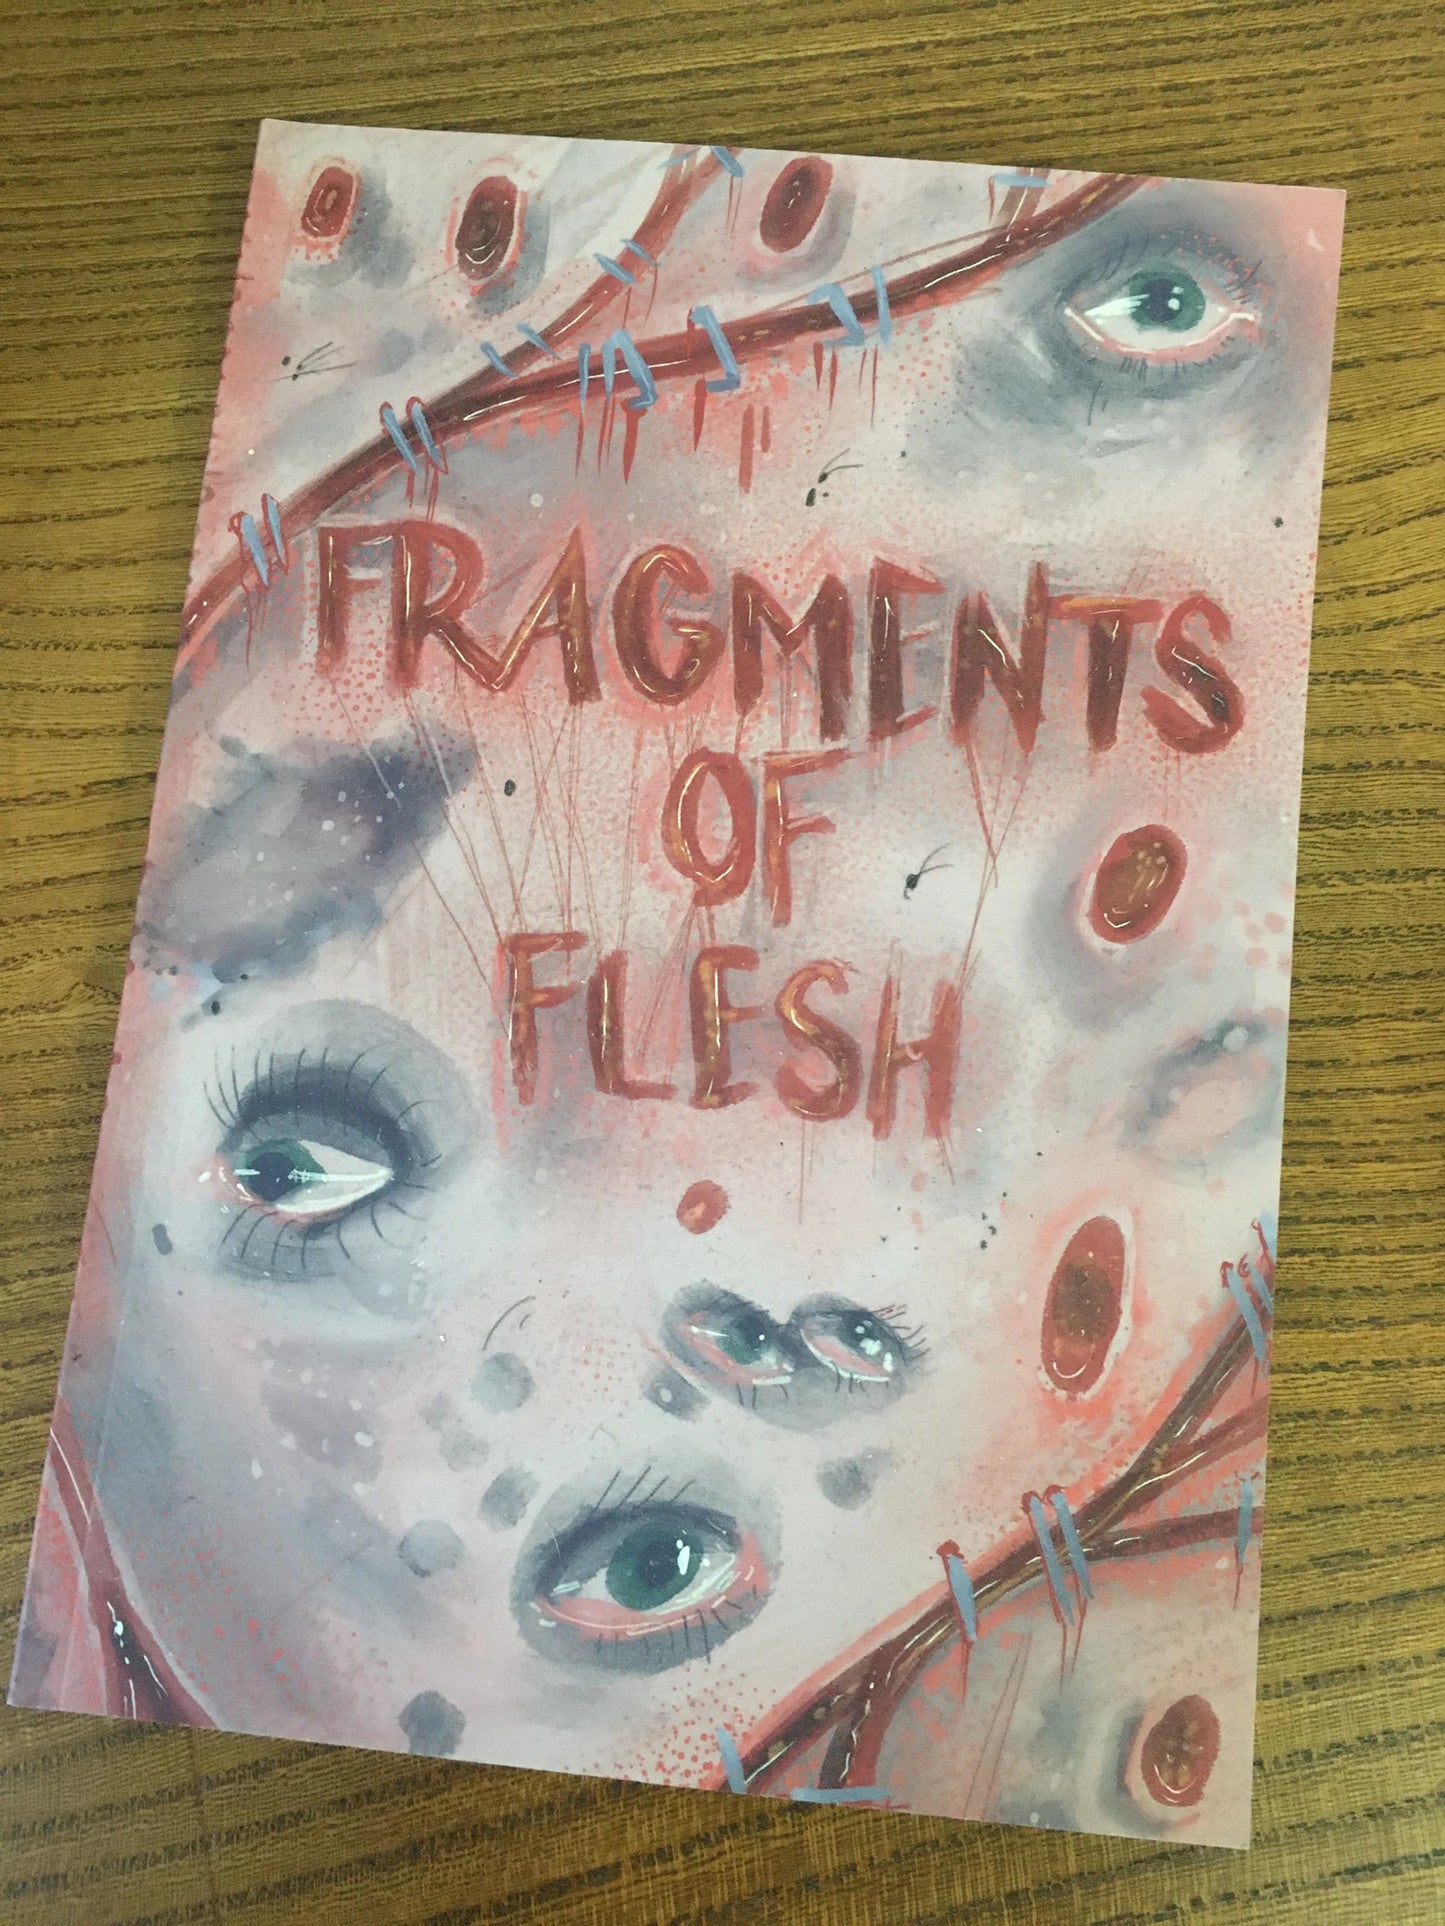 Fragments of Flesh